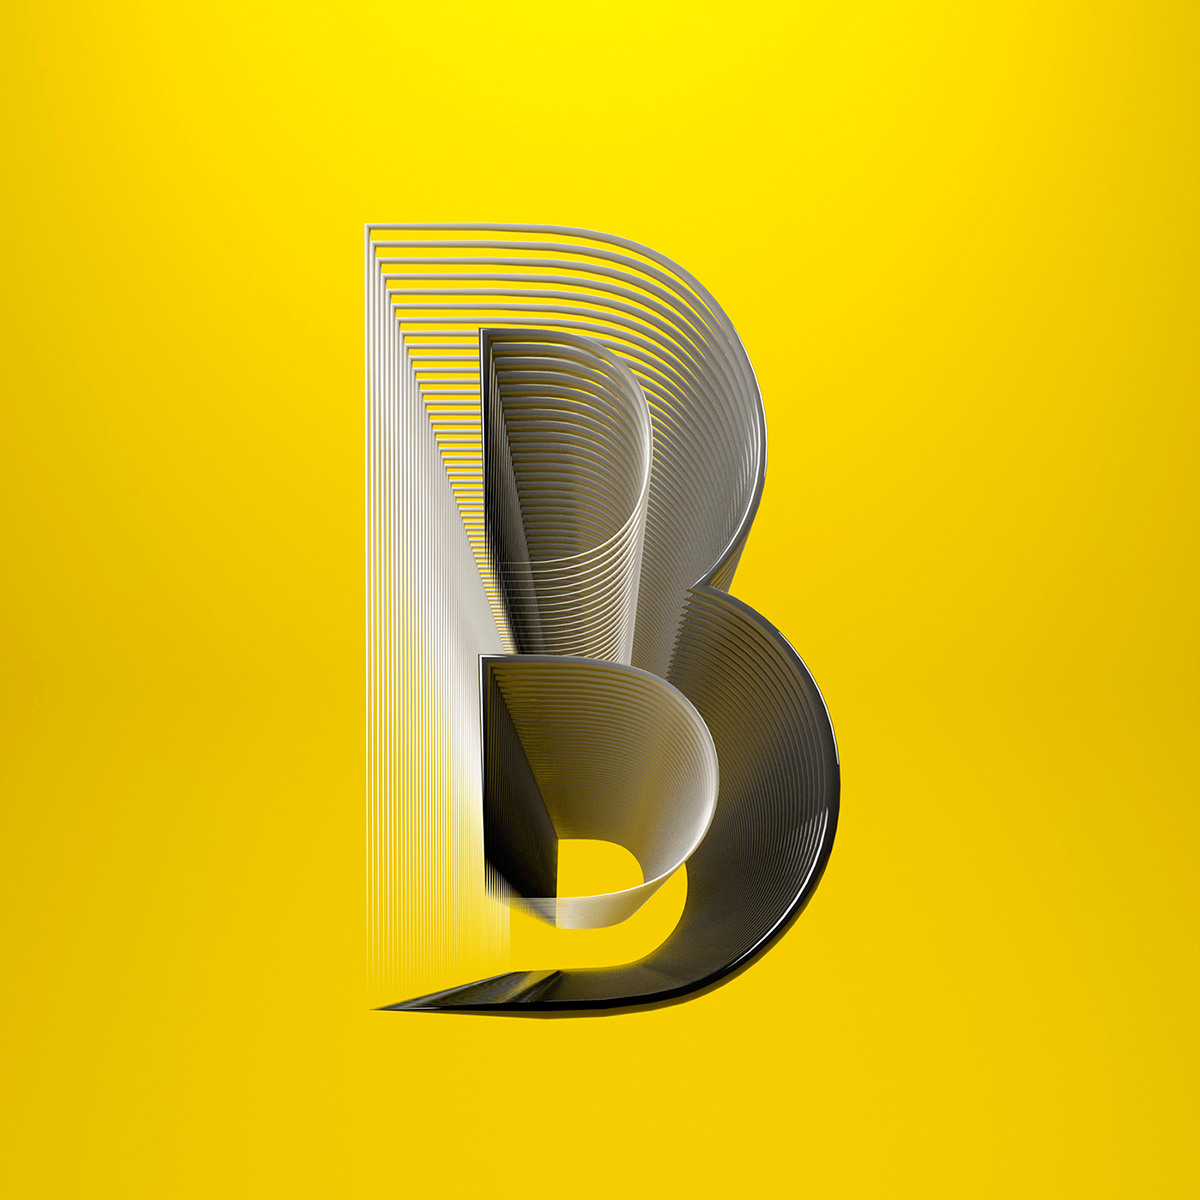 type 3D Type ABC alphabet letters 3D architectural sculptural